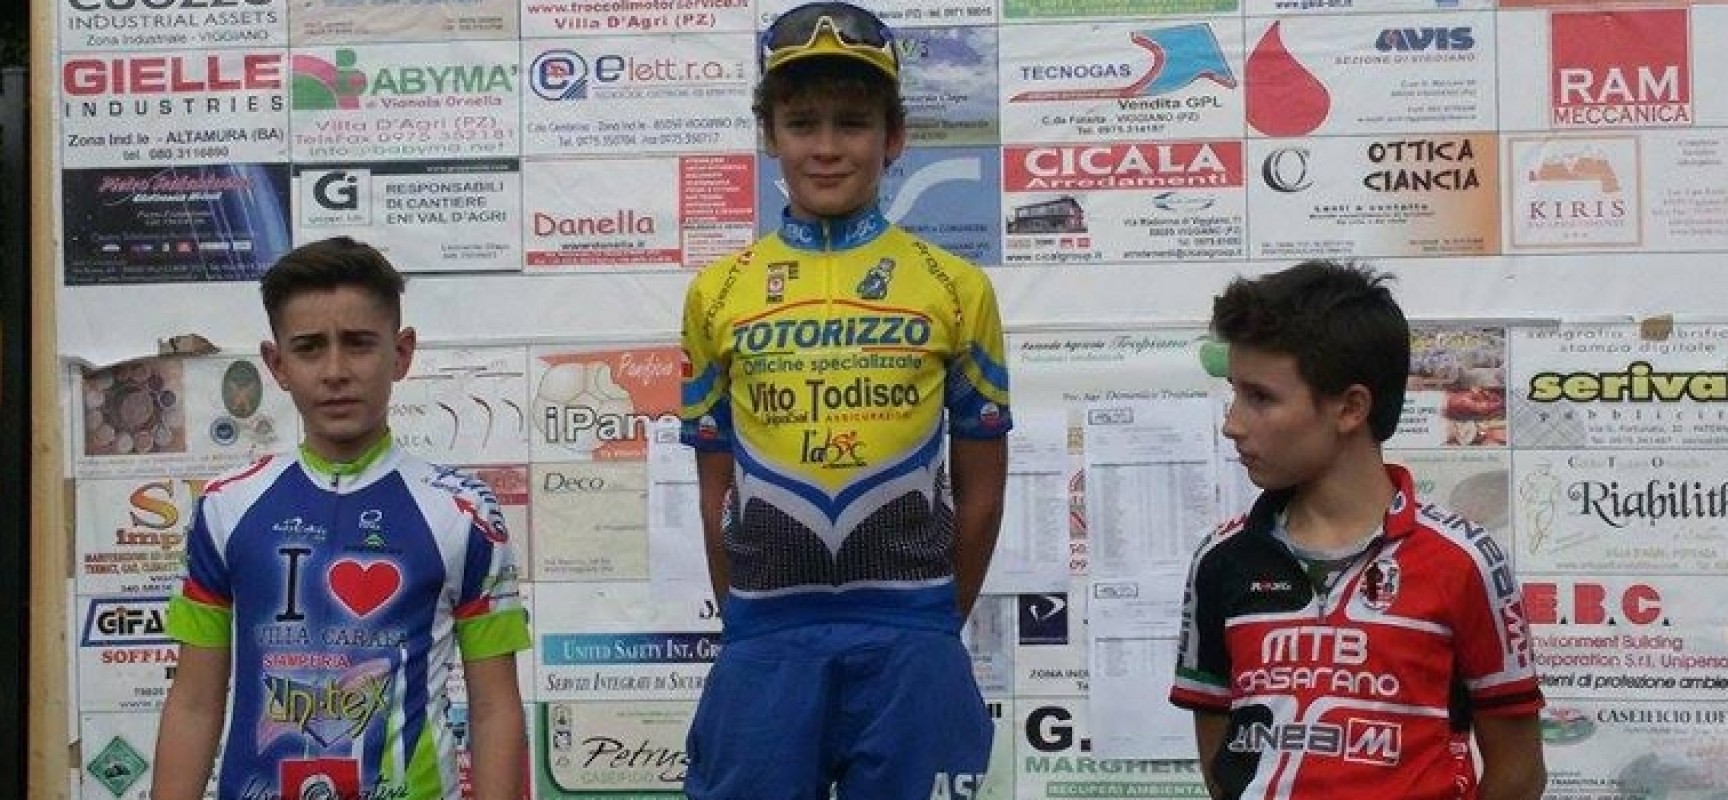 Ludobike Racing Team: Lonconsolo vince il 3° Trofeo Ciclocross Città di Viggiano